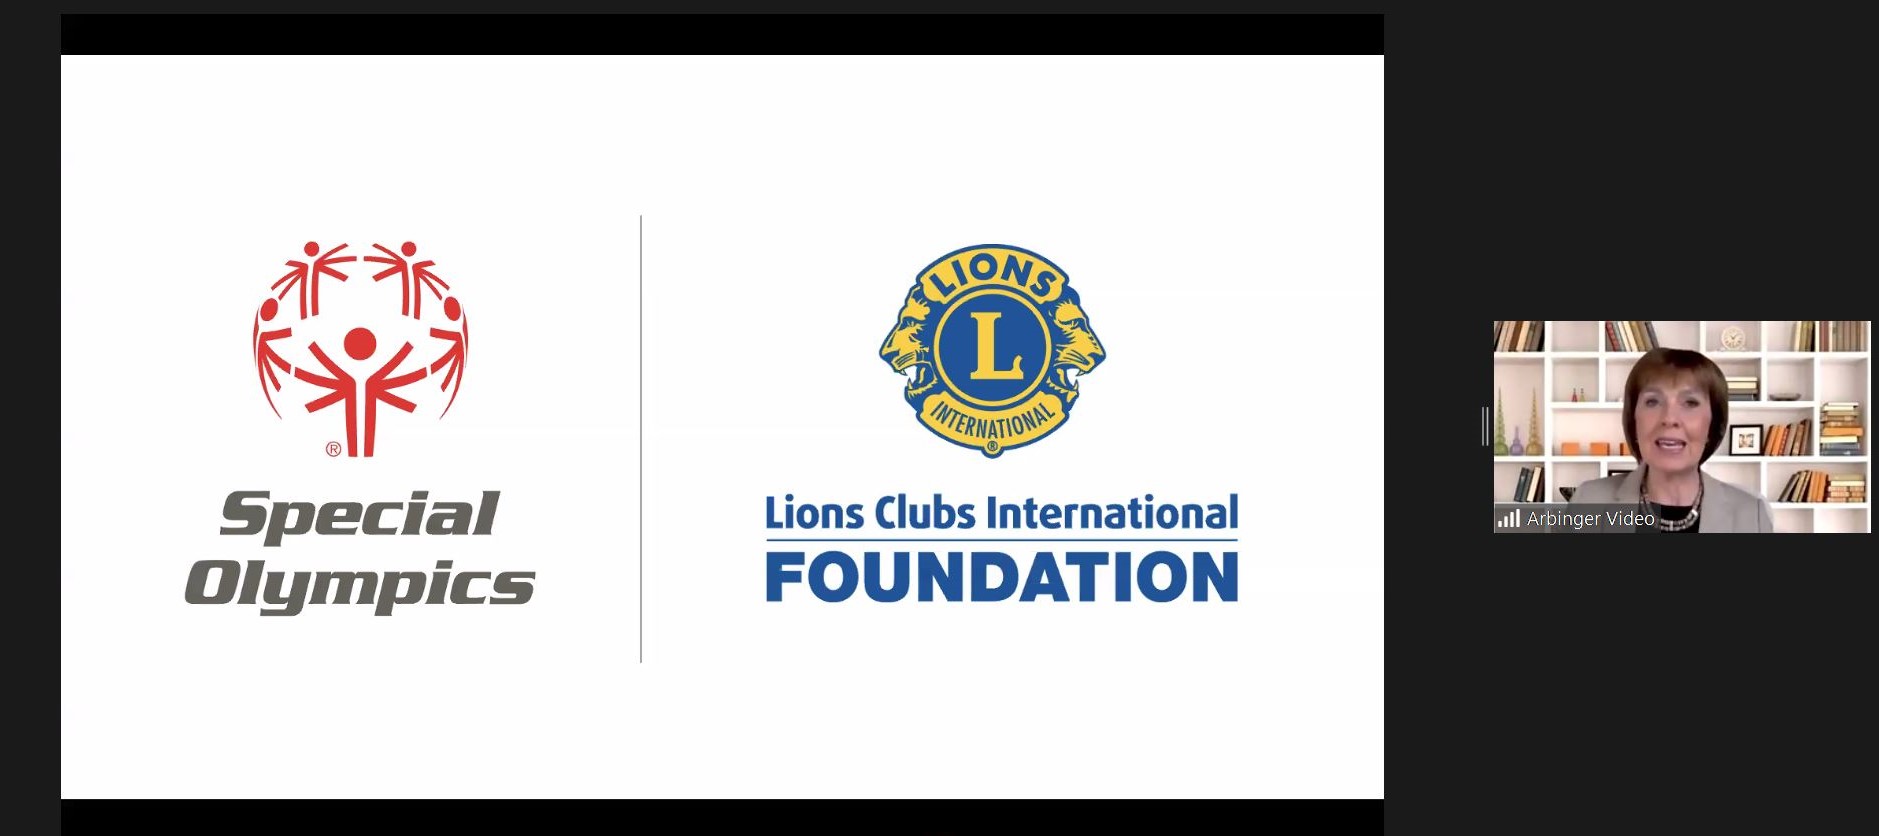 LCIF 主席古德龍•英格達德在線上 Academy for all（為所有人的學院）發言，身邊是 LCIF 和特奧會的標誌。